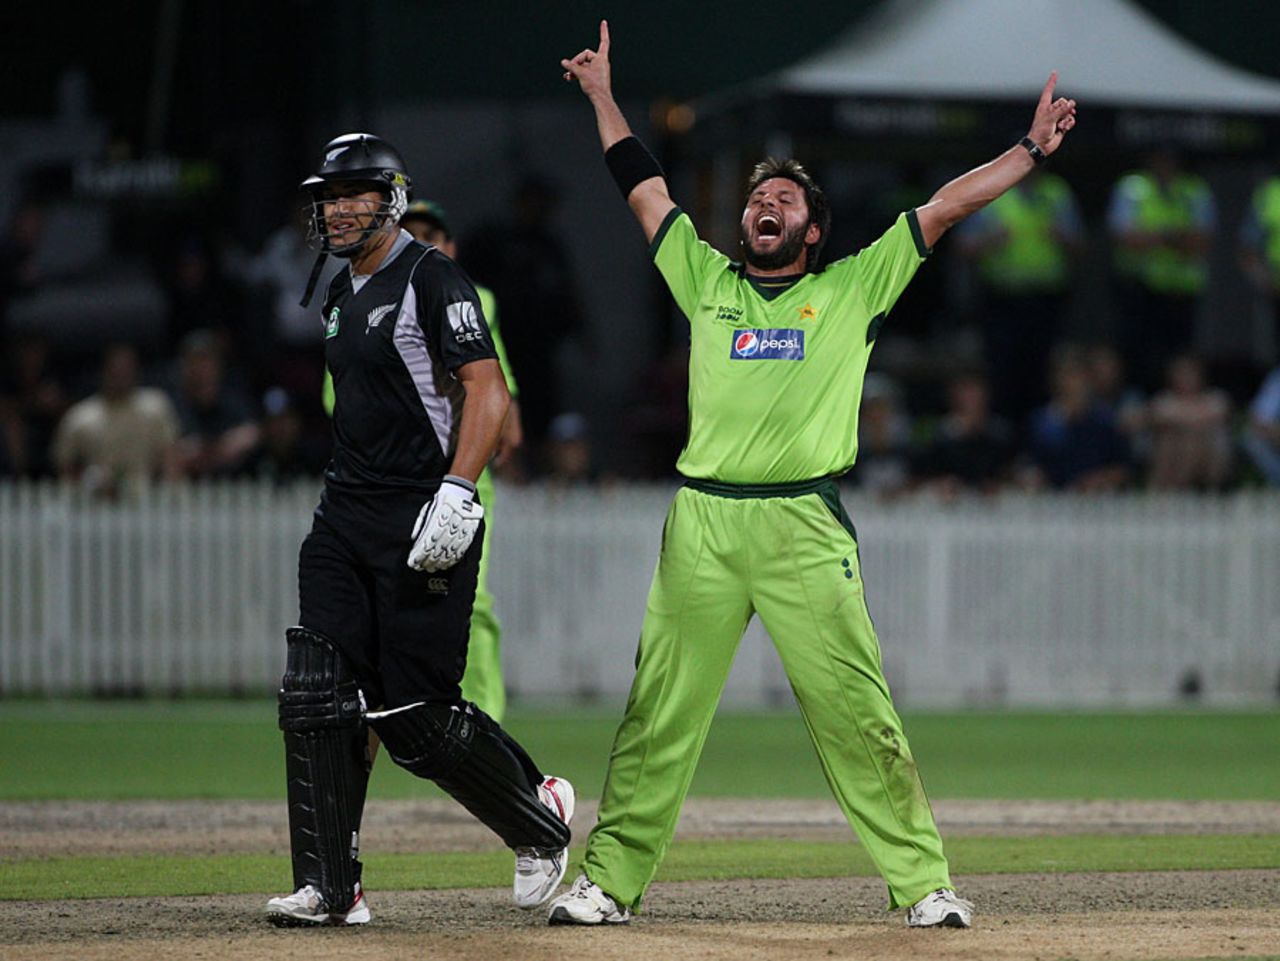 Shahid Afridi claimed the key scalp of Ross Taylor, New Zealand v Pakistan, 5th ODI, Hamilton, February 3, 2011